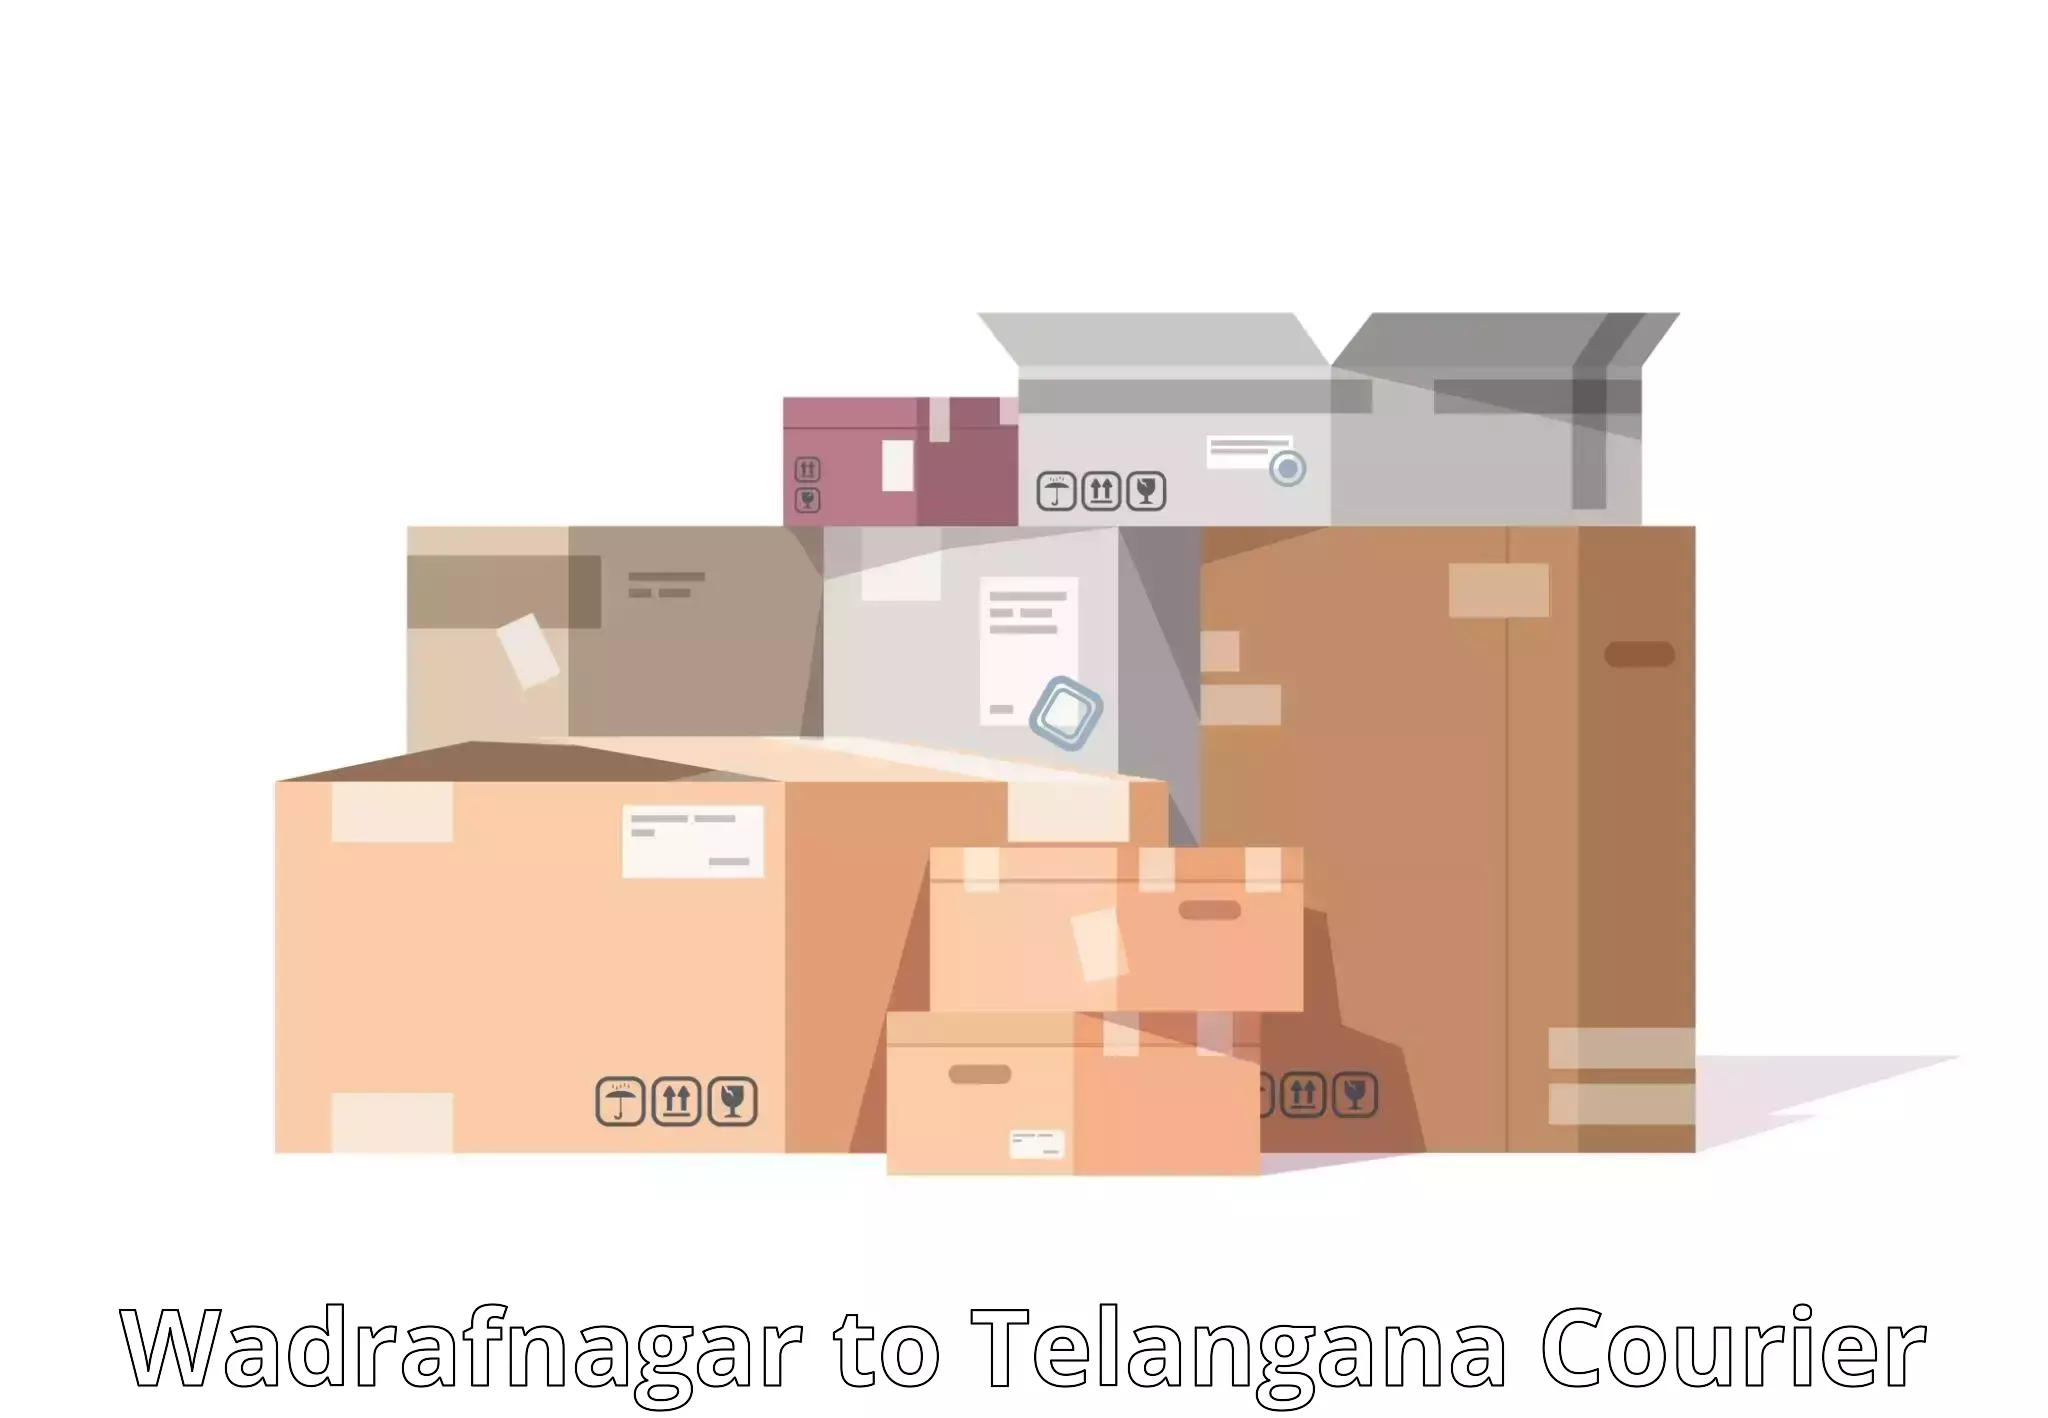 Next-generation courier services Wadrafnagar to Achampet